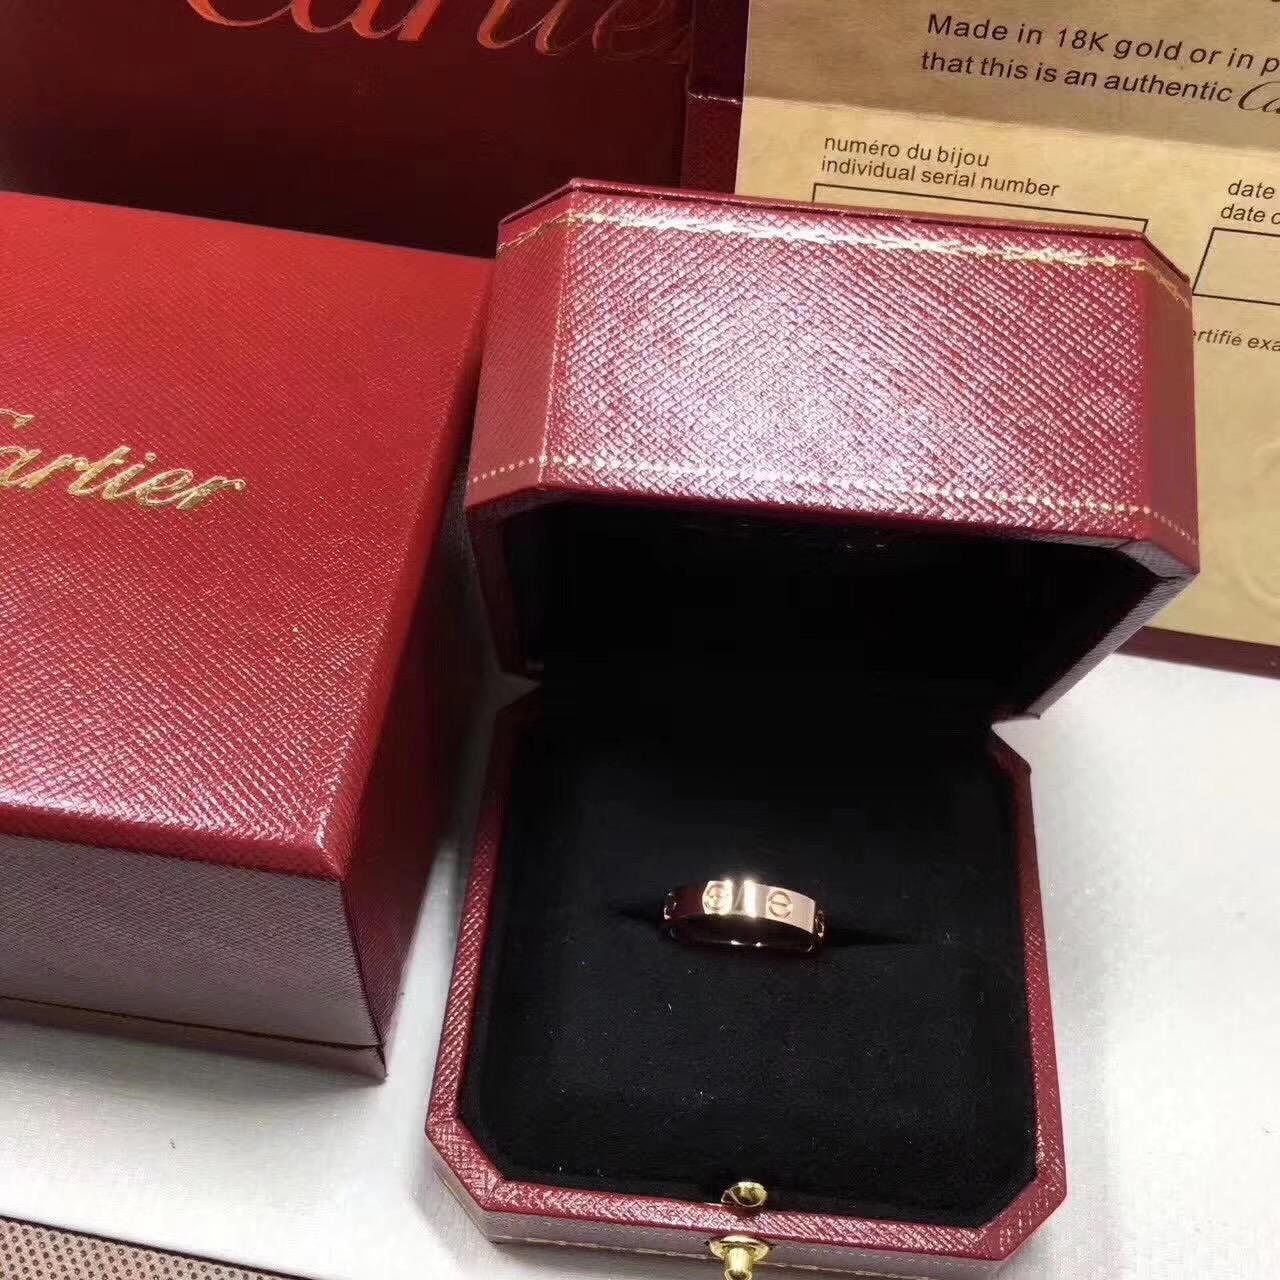 卡地亚love系列窄款的戒指,不带钻的,买黄金的